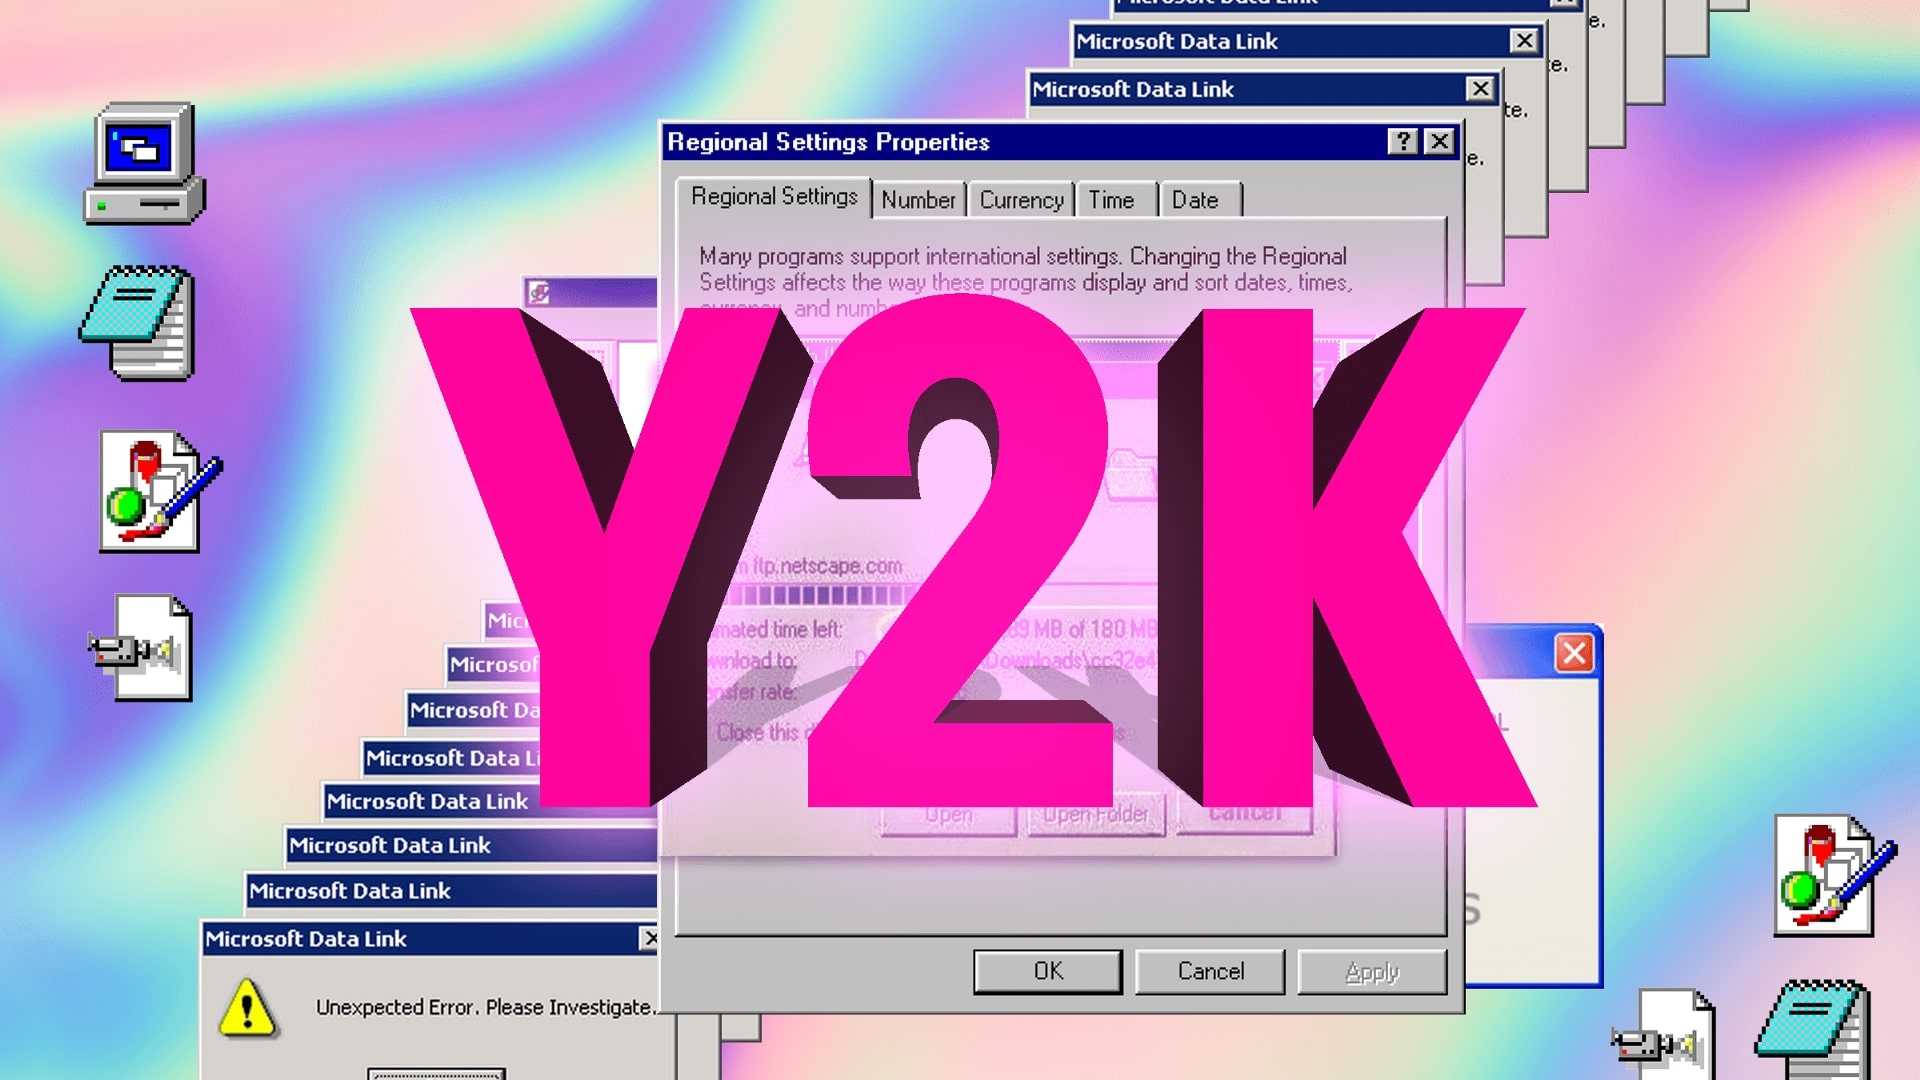 Hãy tải về miễn phí bộ sưu tập hình nền Y2K đa dạng và đầy sáng tạo từ [100+] Hình nền Y2K miễn phí cho... để cập nhật xu hướng mới nhất trong trang trí màn hình máy tính. Hình ảnh đẹp và độc đáo sẽ giúp bạn thể hiện phong cách và cá tính của mình.